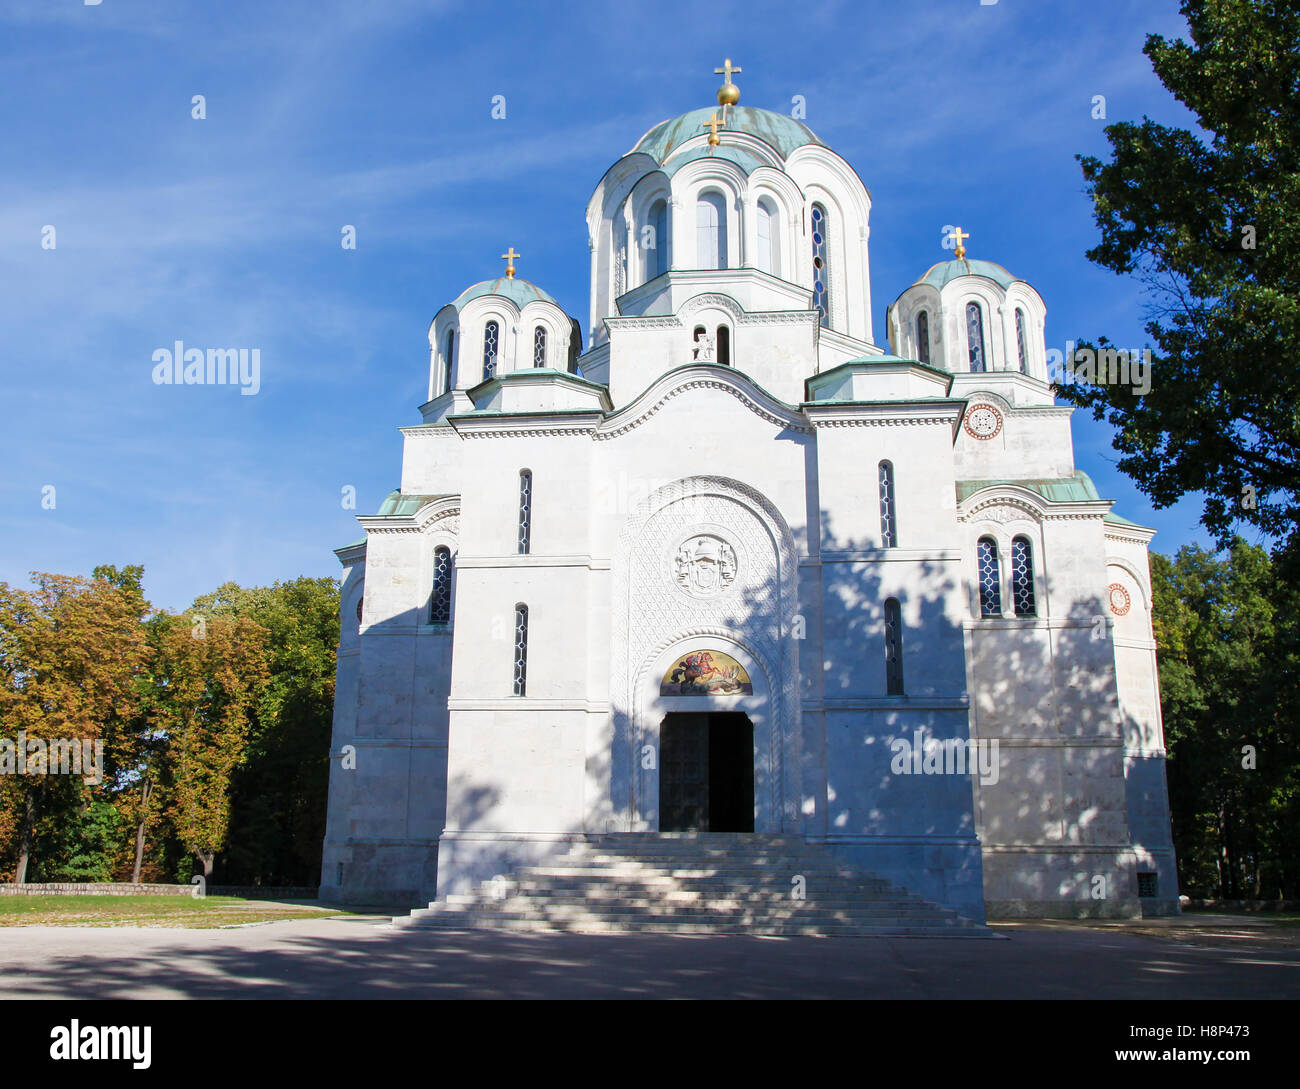 La Iglesia de San Sava es una iglesia ortodoxa serbia situada en la meseta Vracar en Belgrado. Es uno de los mayores Orthod Foto de stock